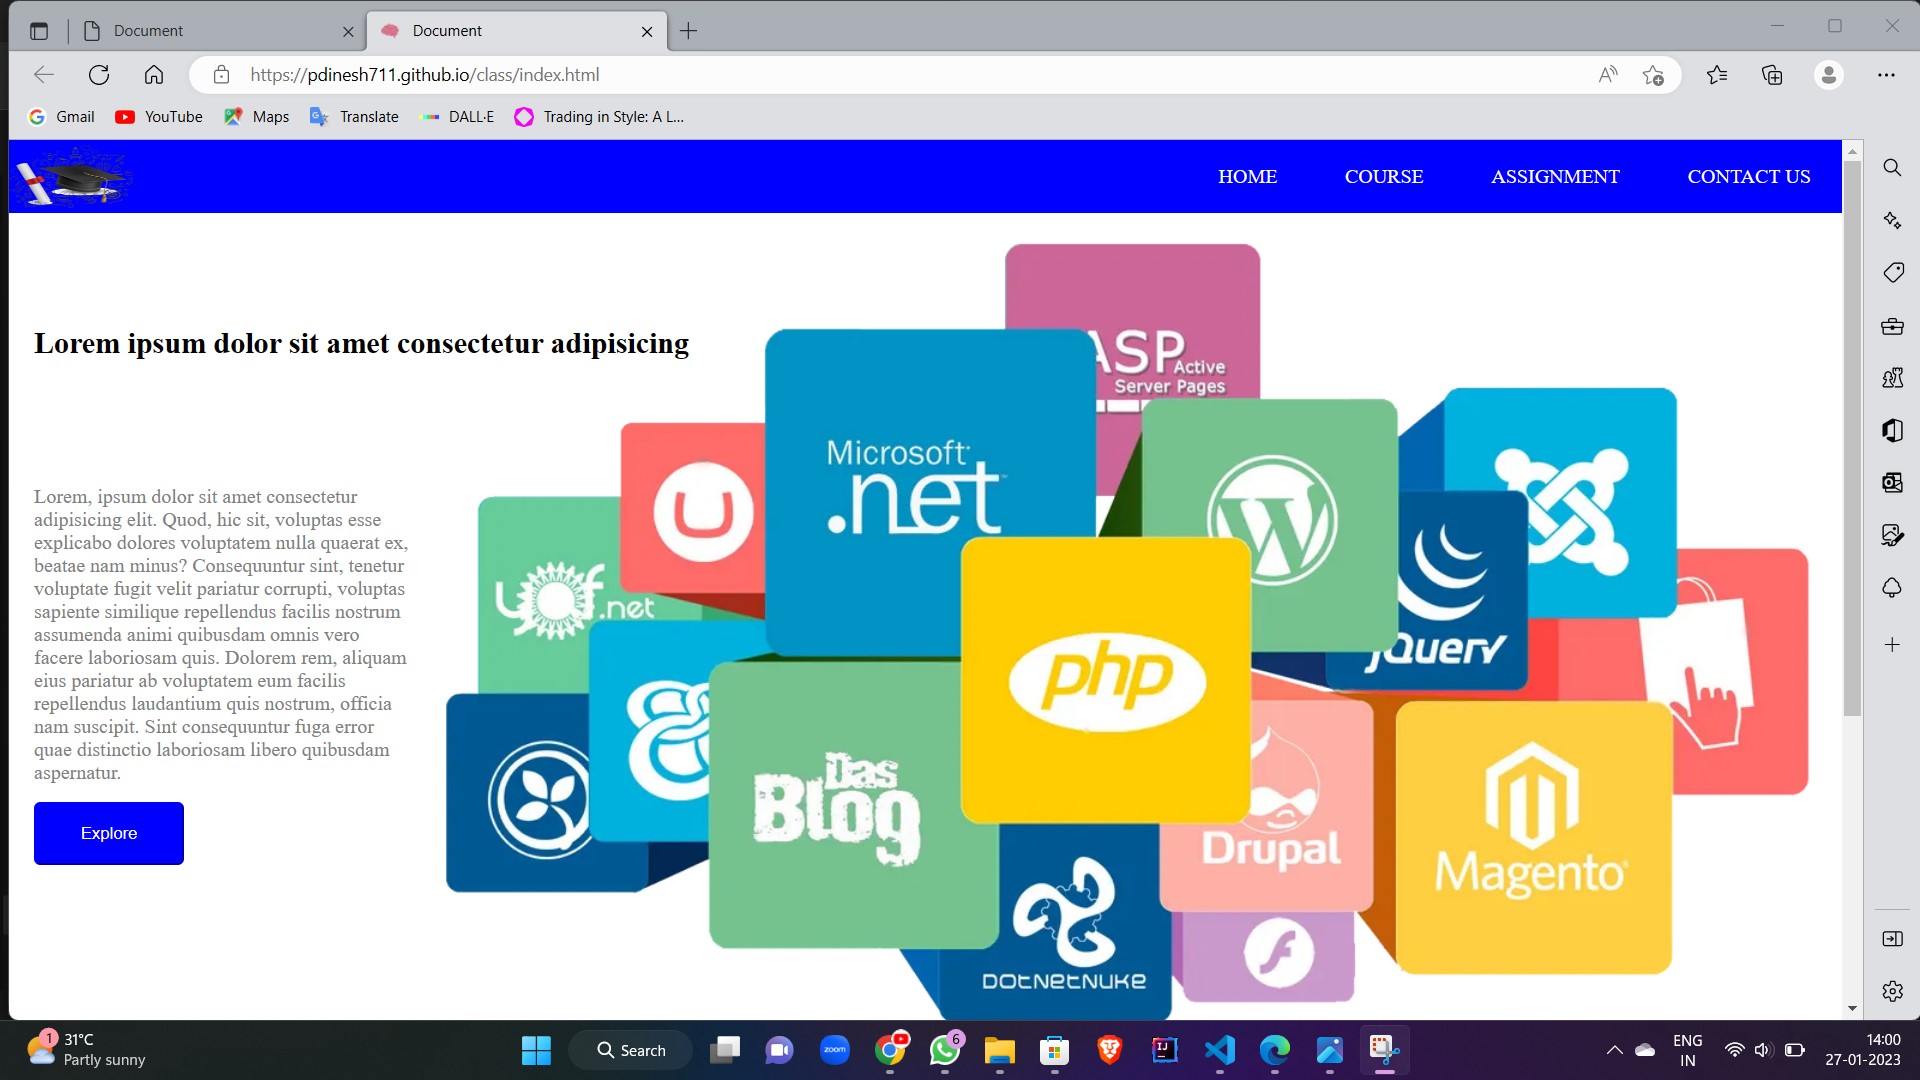 Web E-learning platform